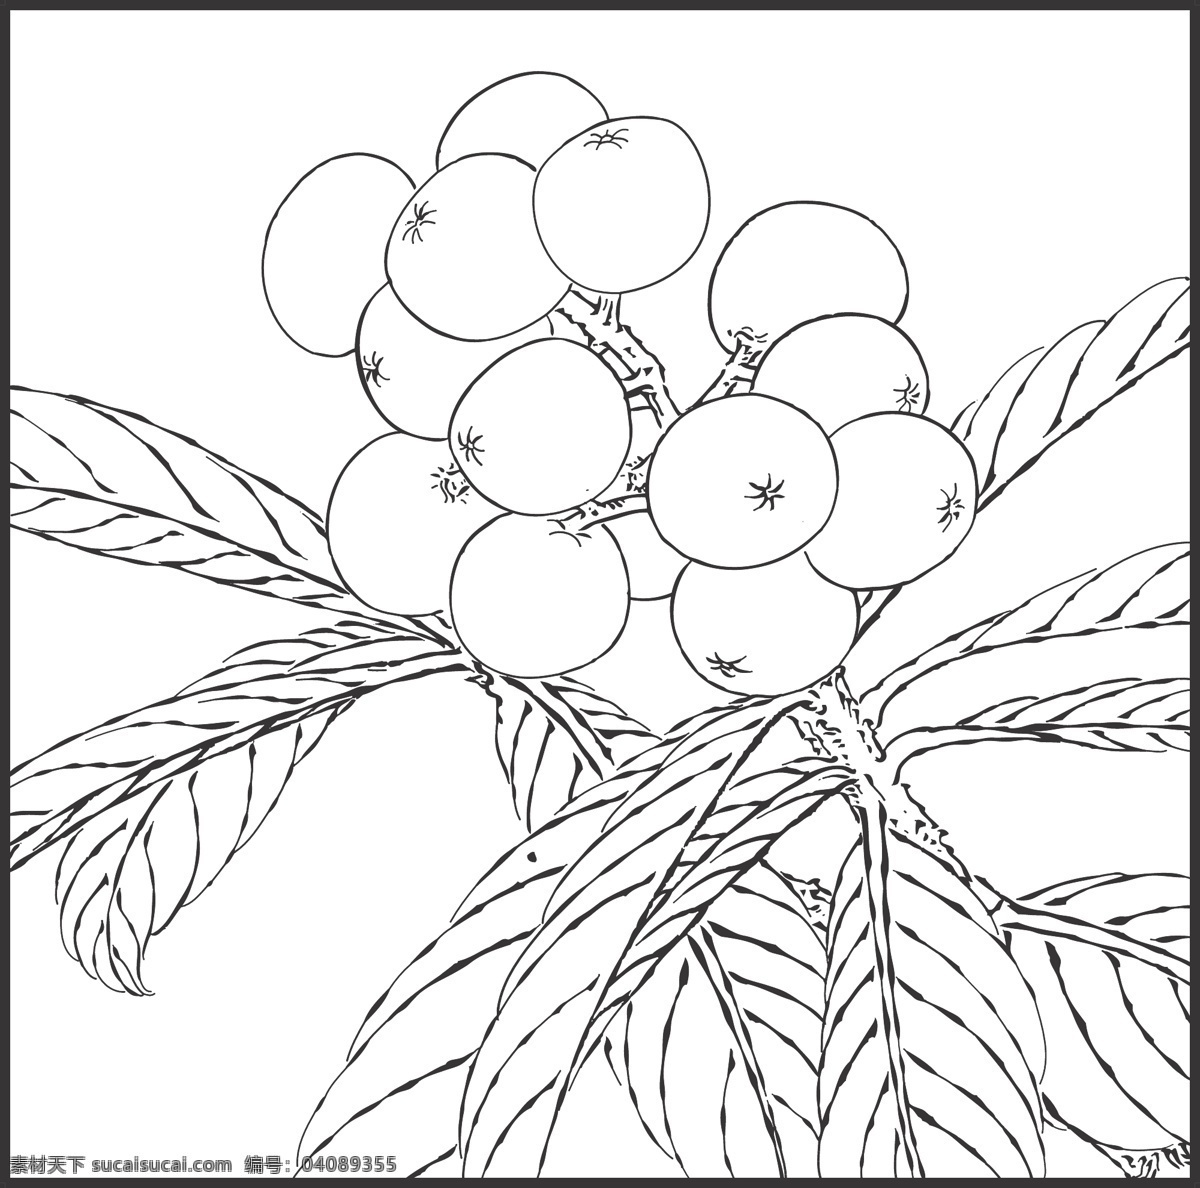 枇杷 水果 园林观赏 线条 矢量 装饰 插画 白描 生物世界 树木树叶